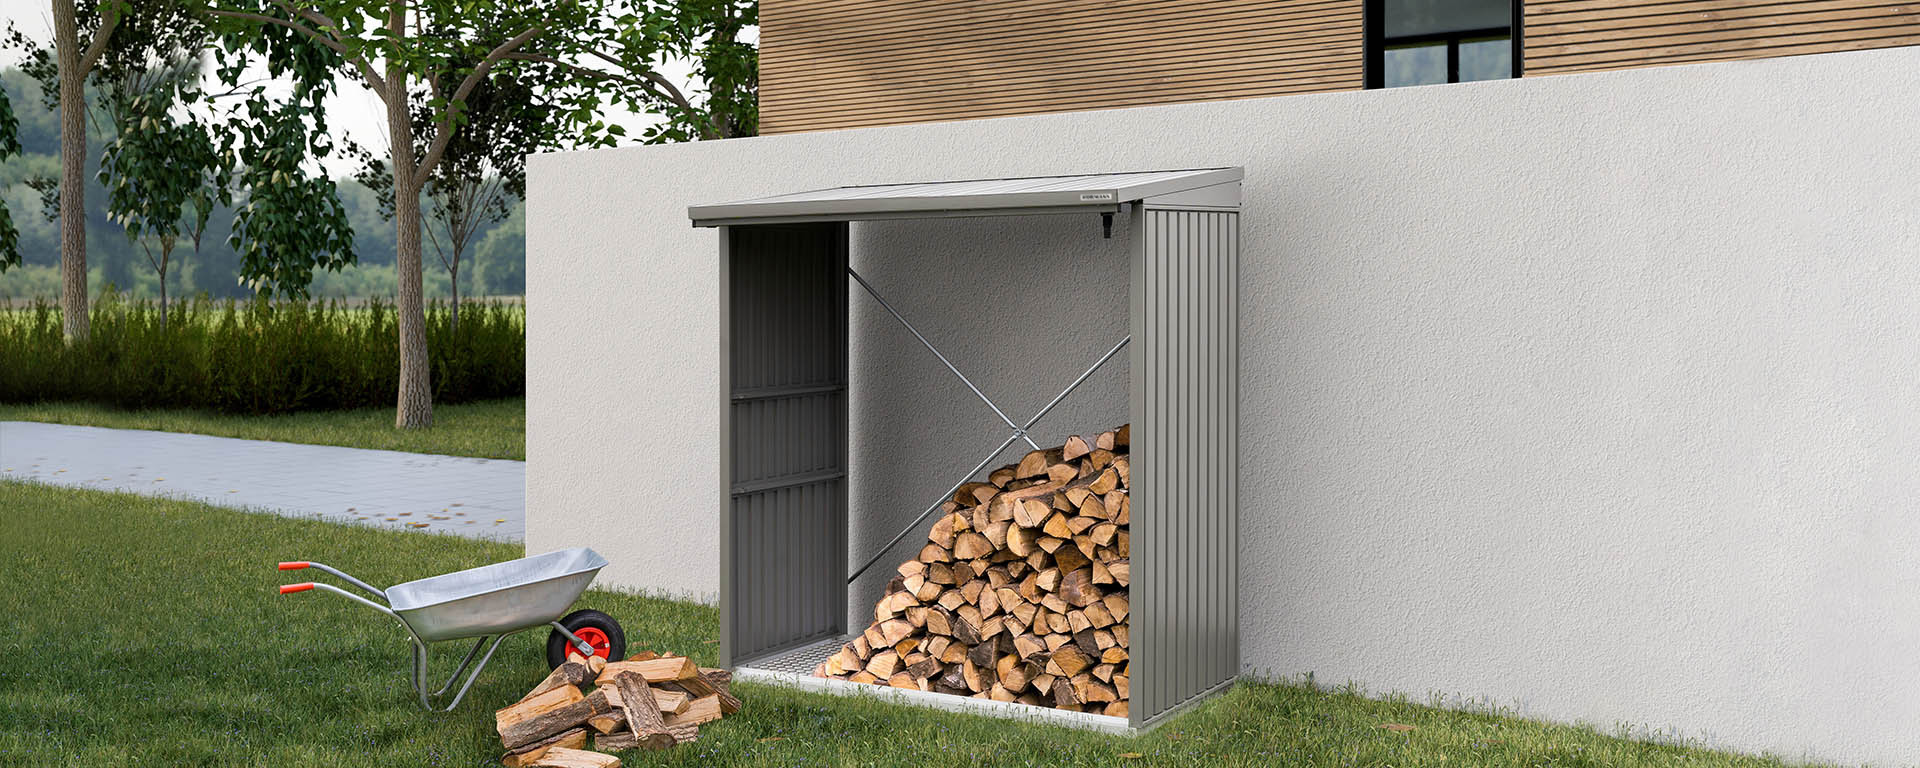 Support pour bois de chauffage d'extérieur robuste pour rangement